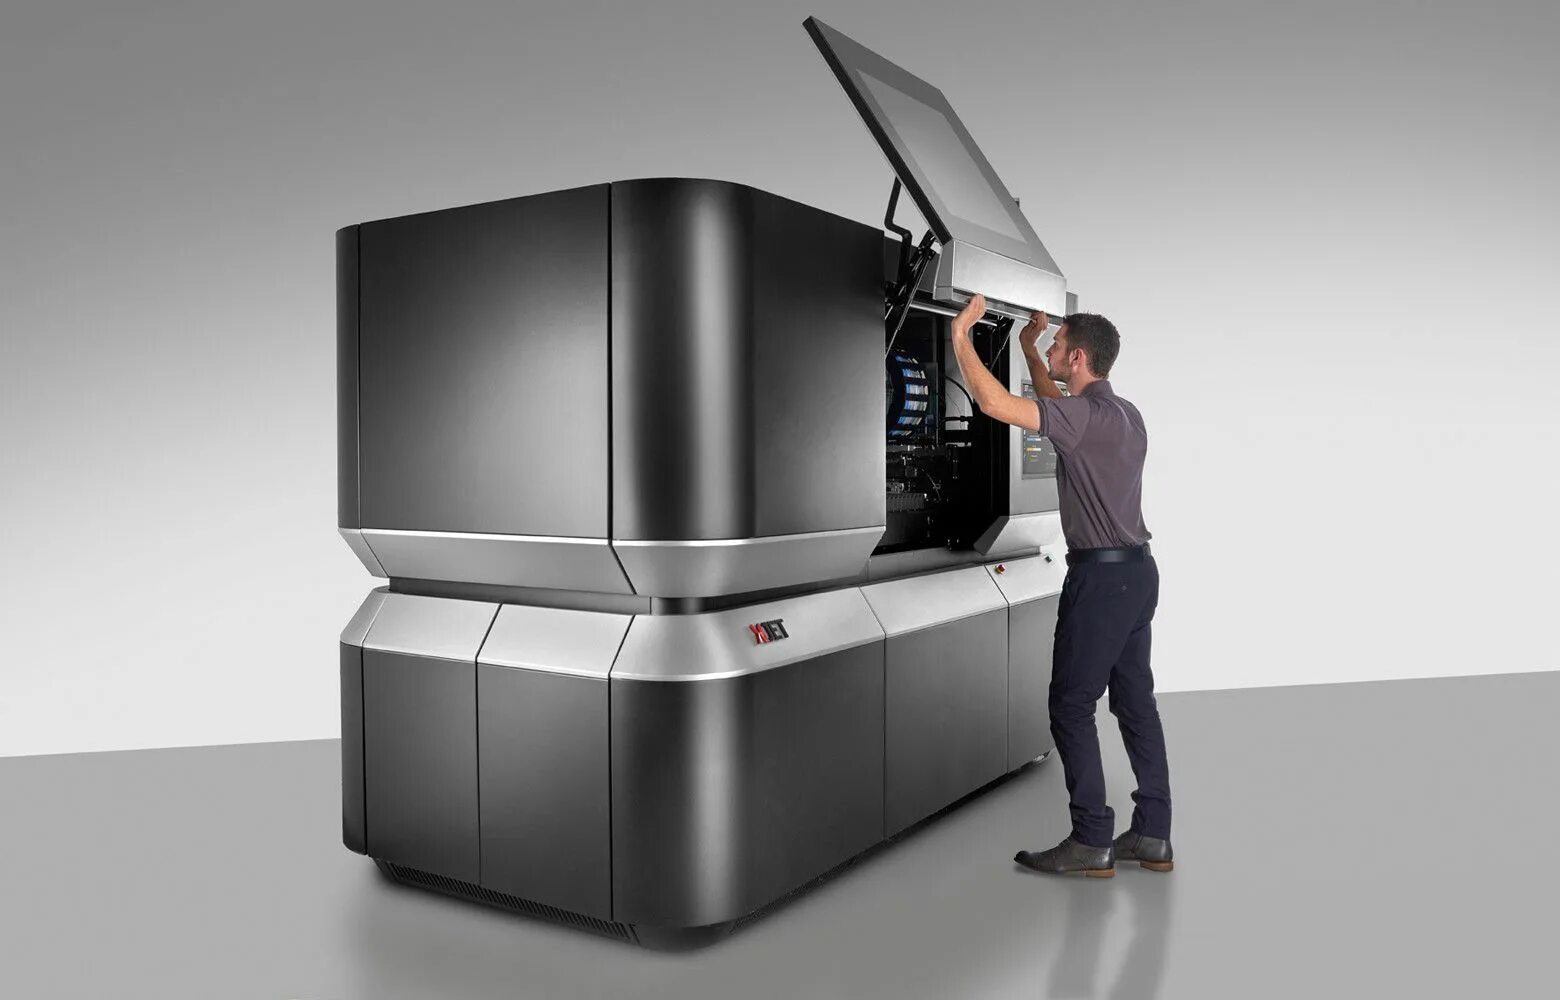 The machine is designed to. Дизайн принтерной. Printer Design. Xjet NPJ. Дизайн промышленный дизайн с применением технологий 3d-печати.